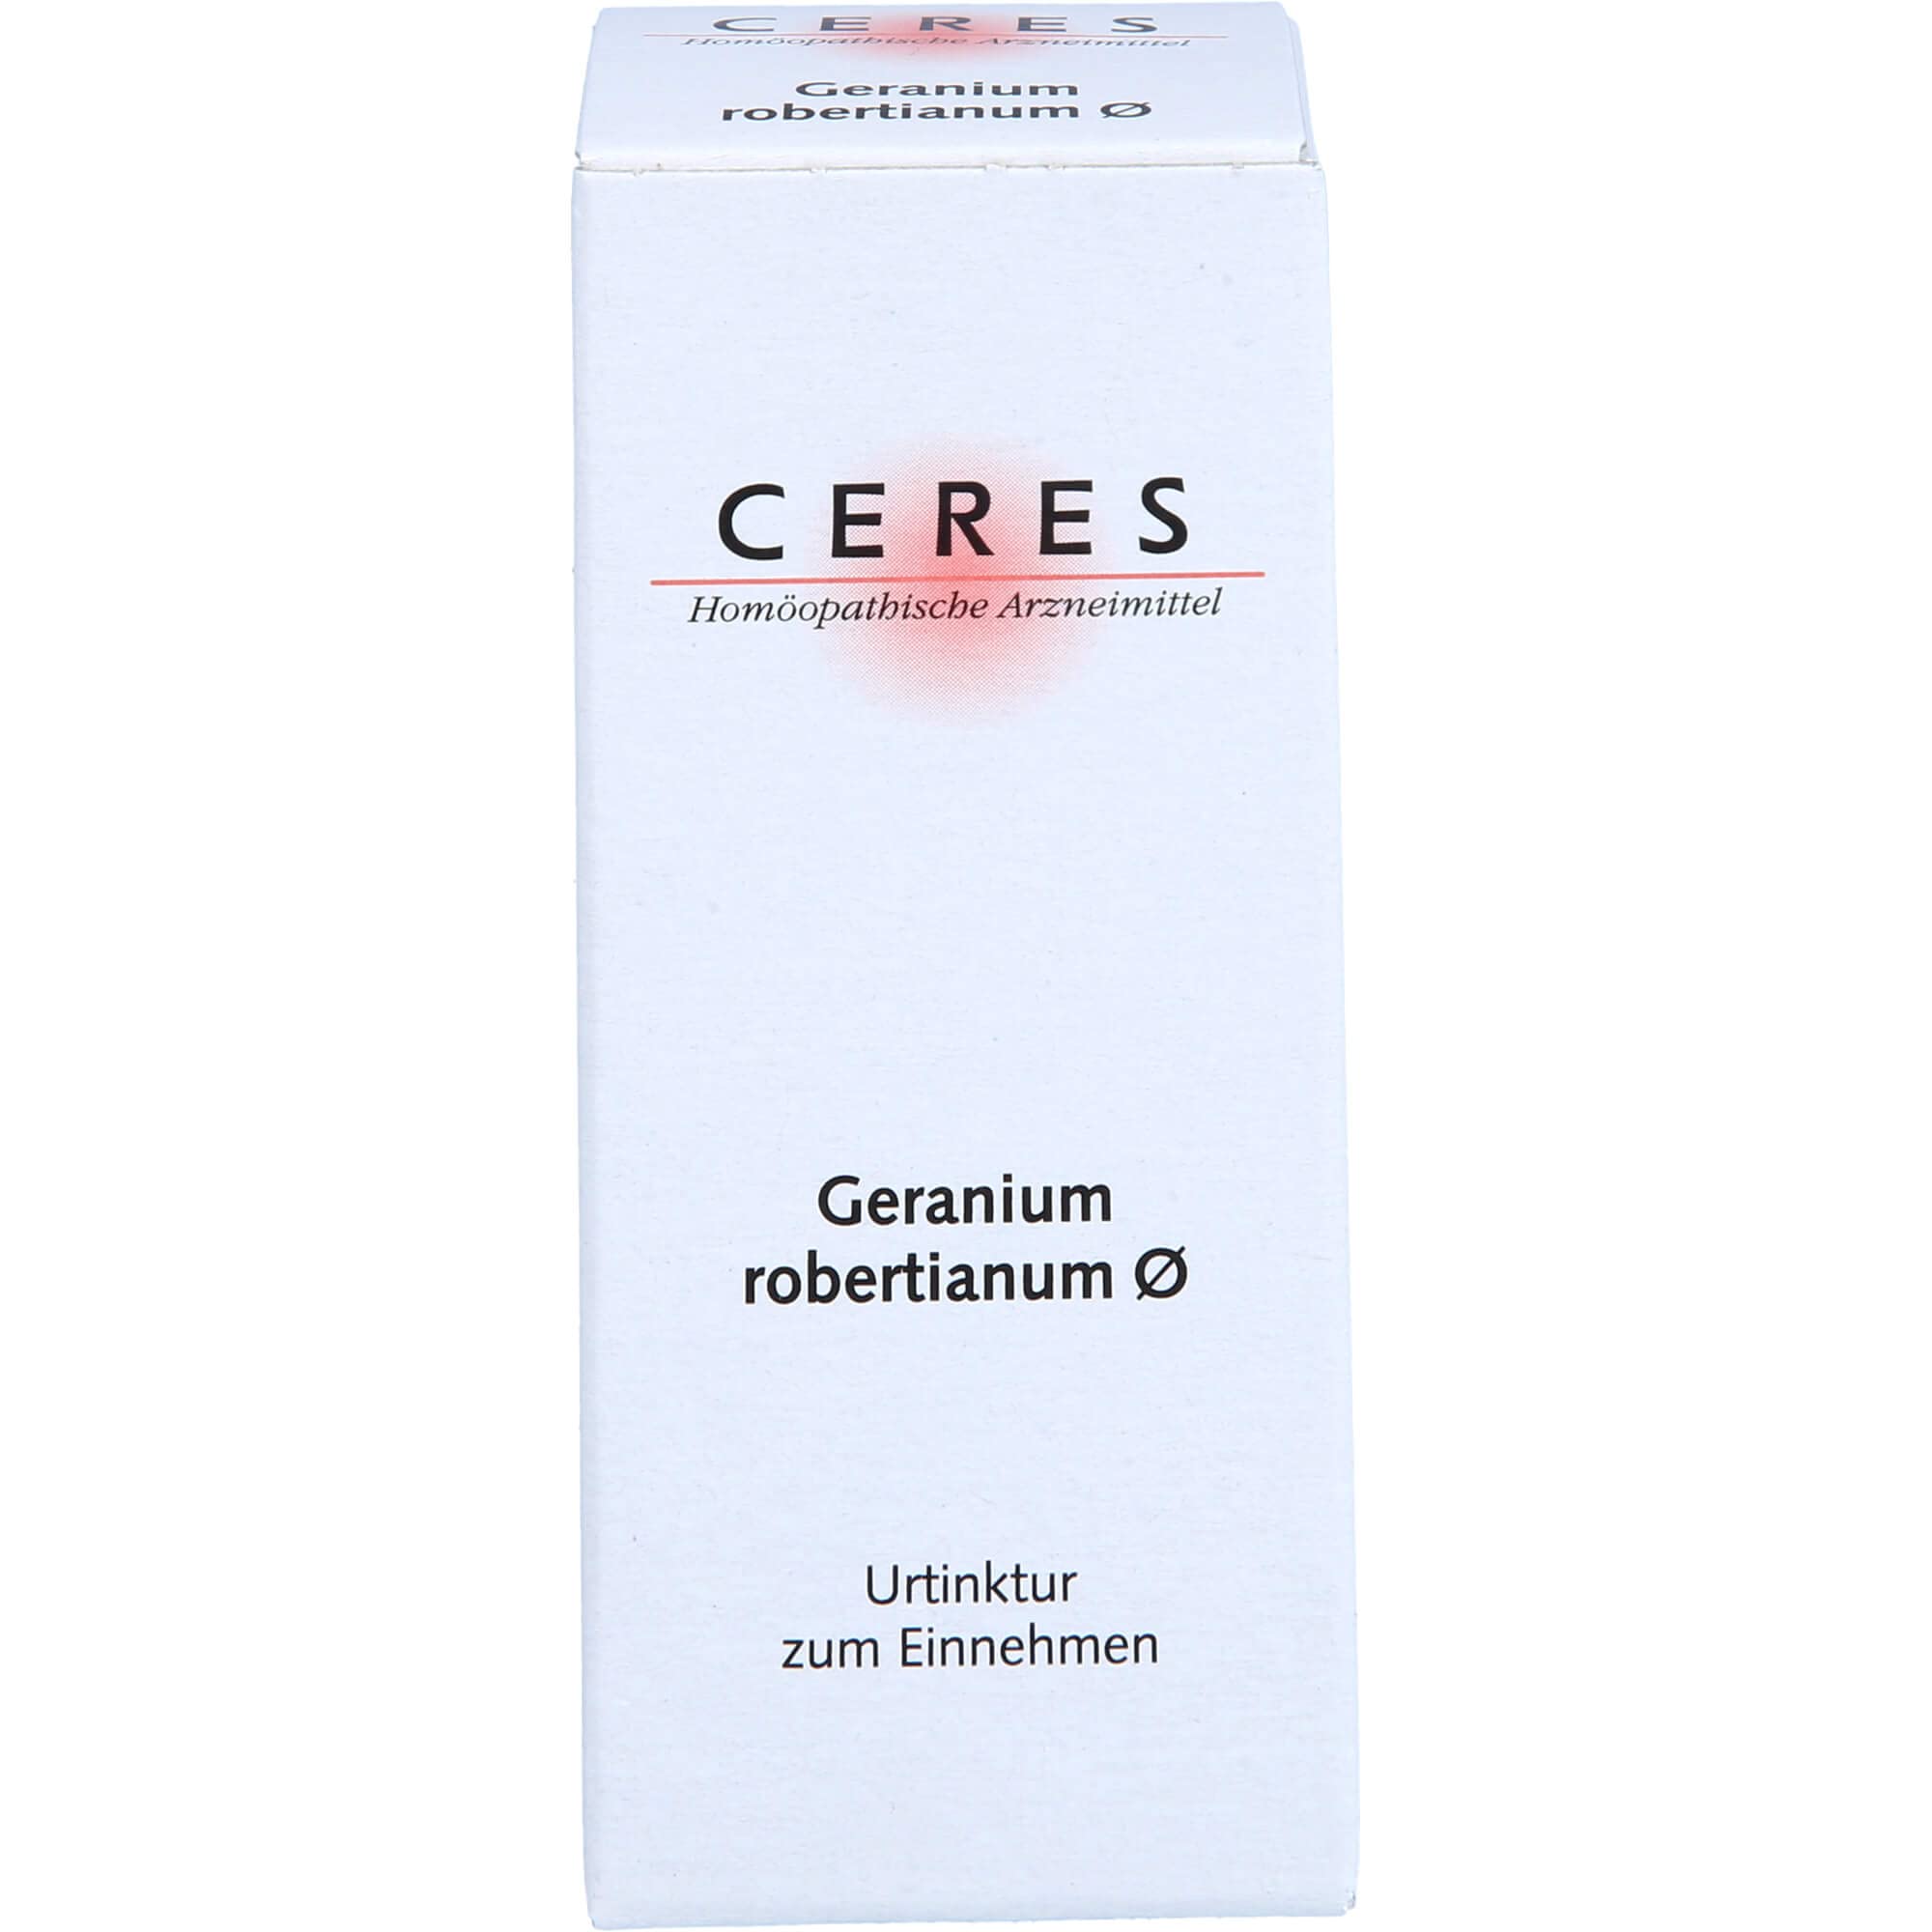 CERES Geranium robertianum Urtinktur 20 ml